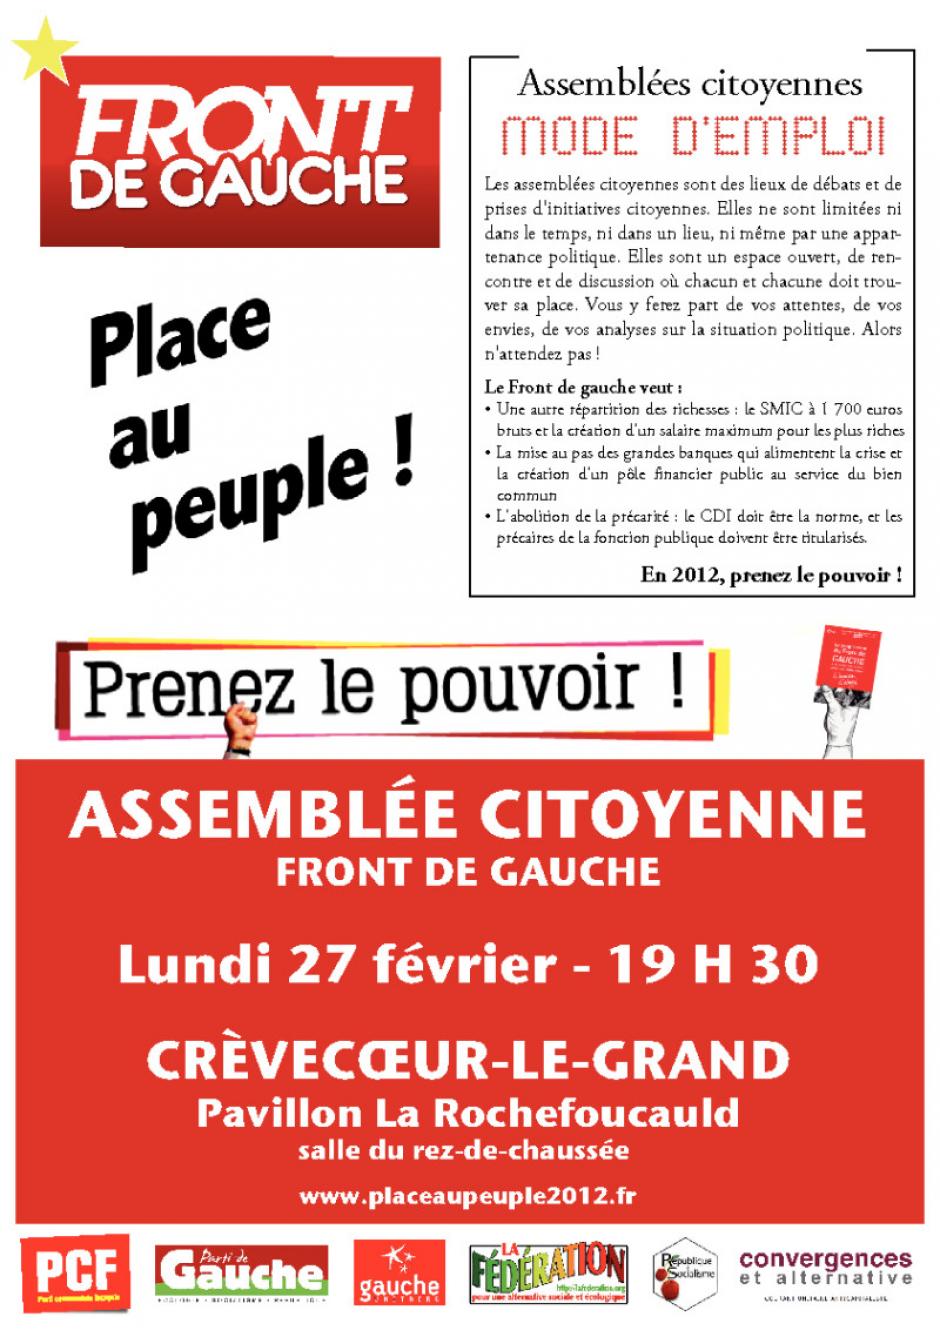 27 février, Crèvecœur-le-Grand - Assemblée citoyenne du Front de gauche